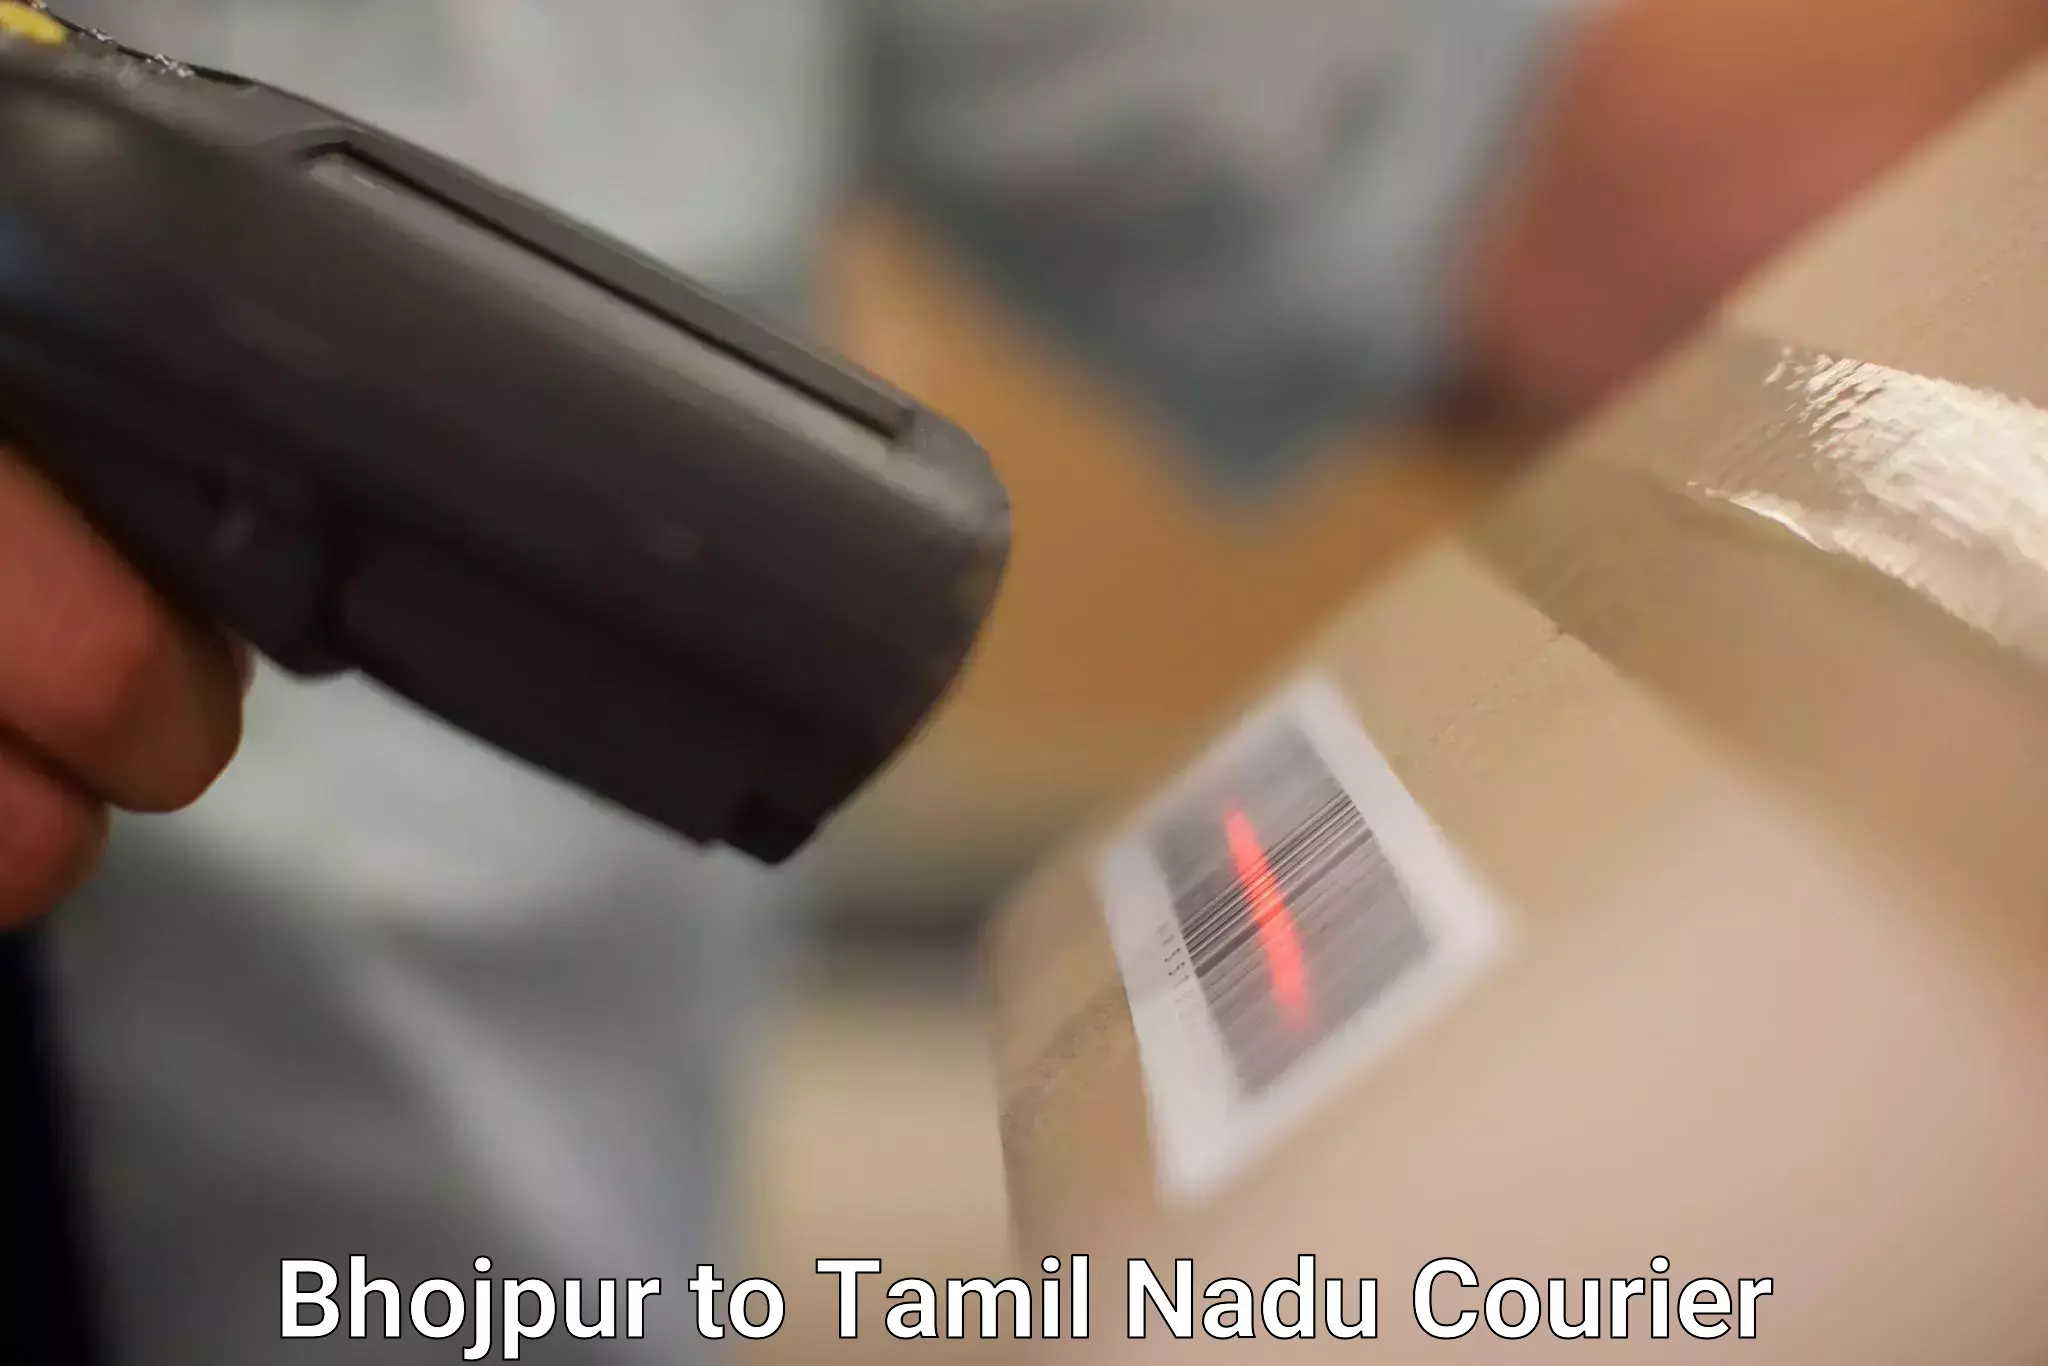 Modern courier technology Bhojpur to Palladam